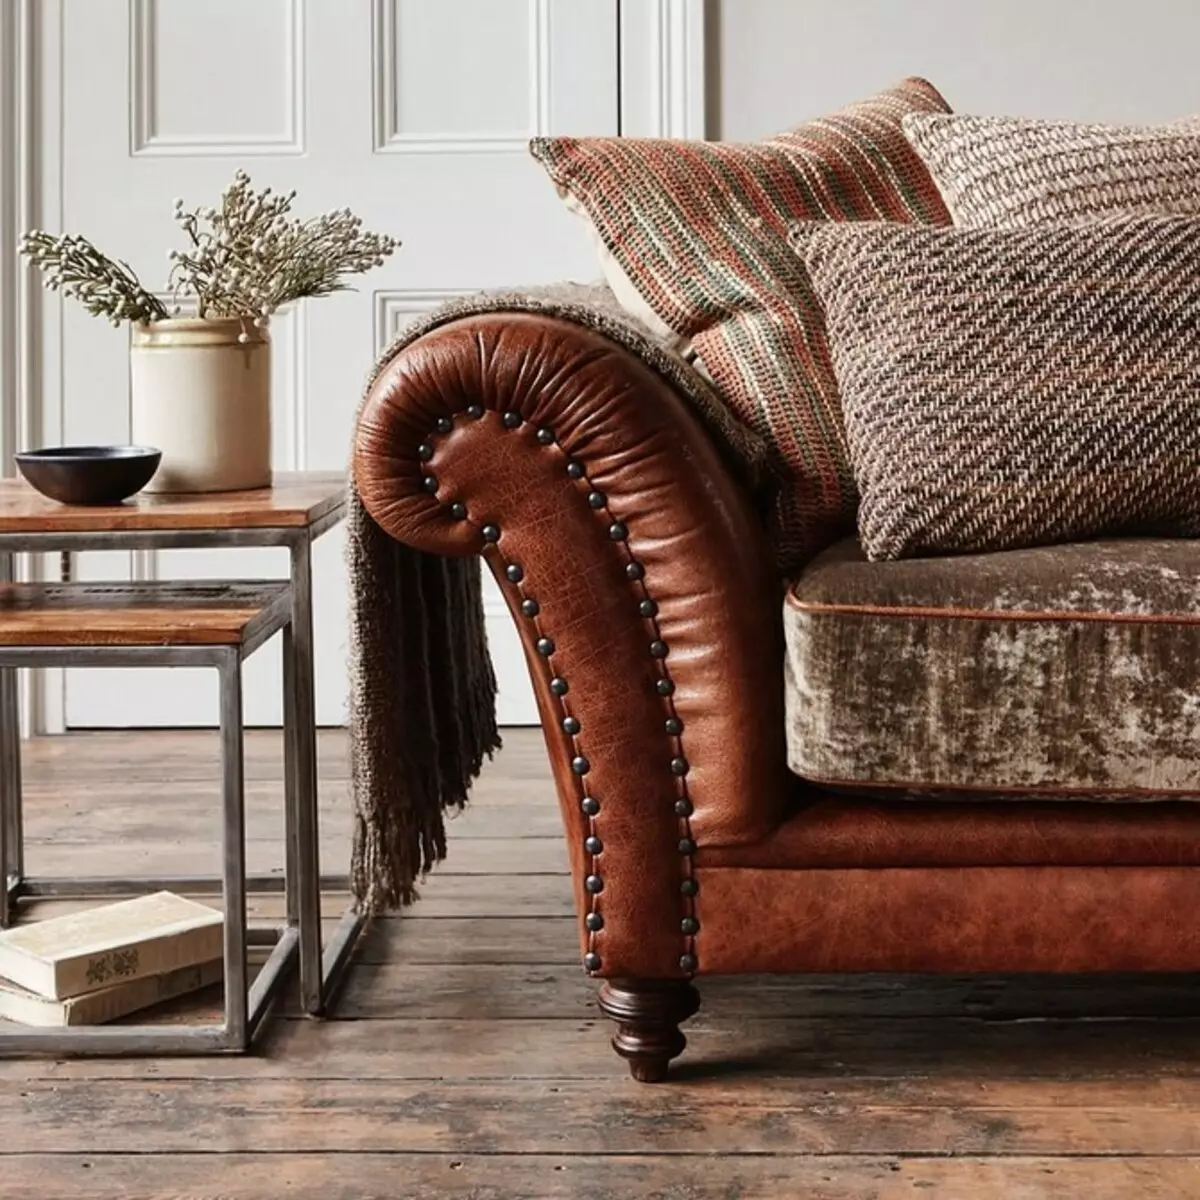 Sala de estar en marrón: Desmontamos las características de los tonos naturales y las texturas naturales. 2963_94